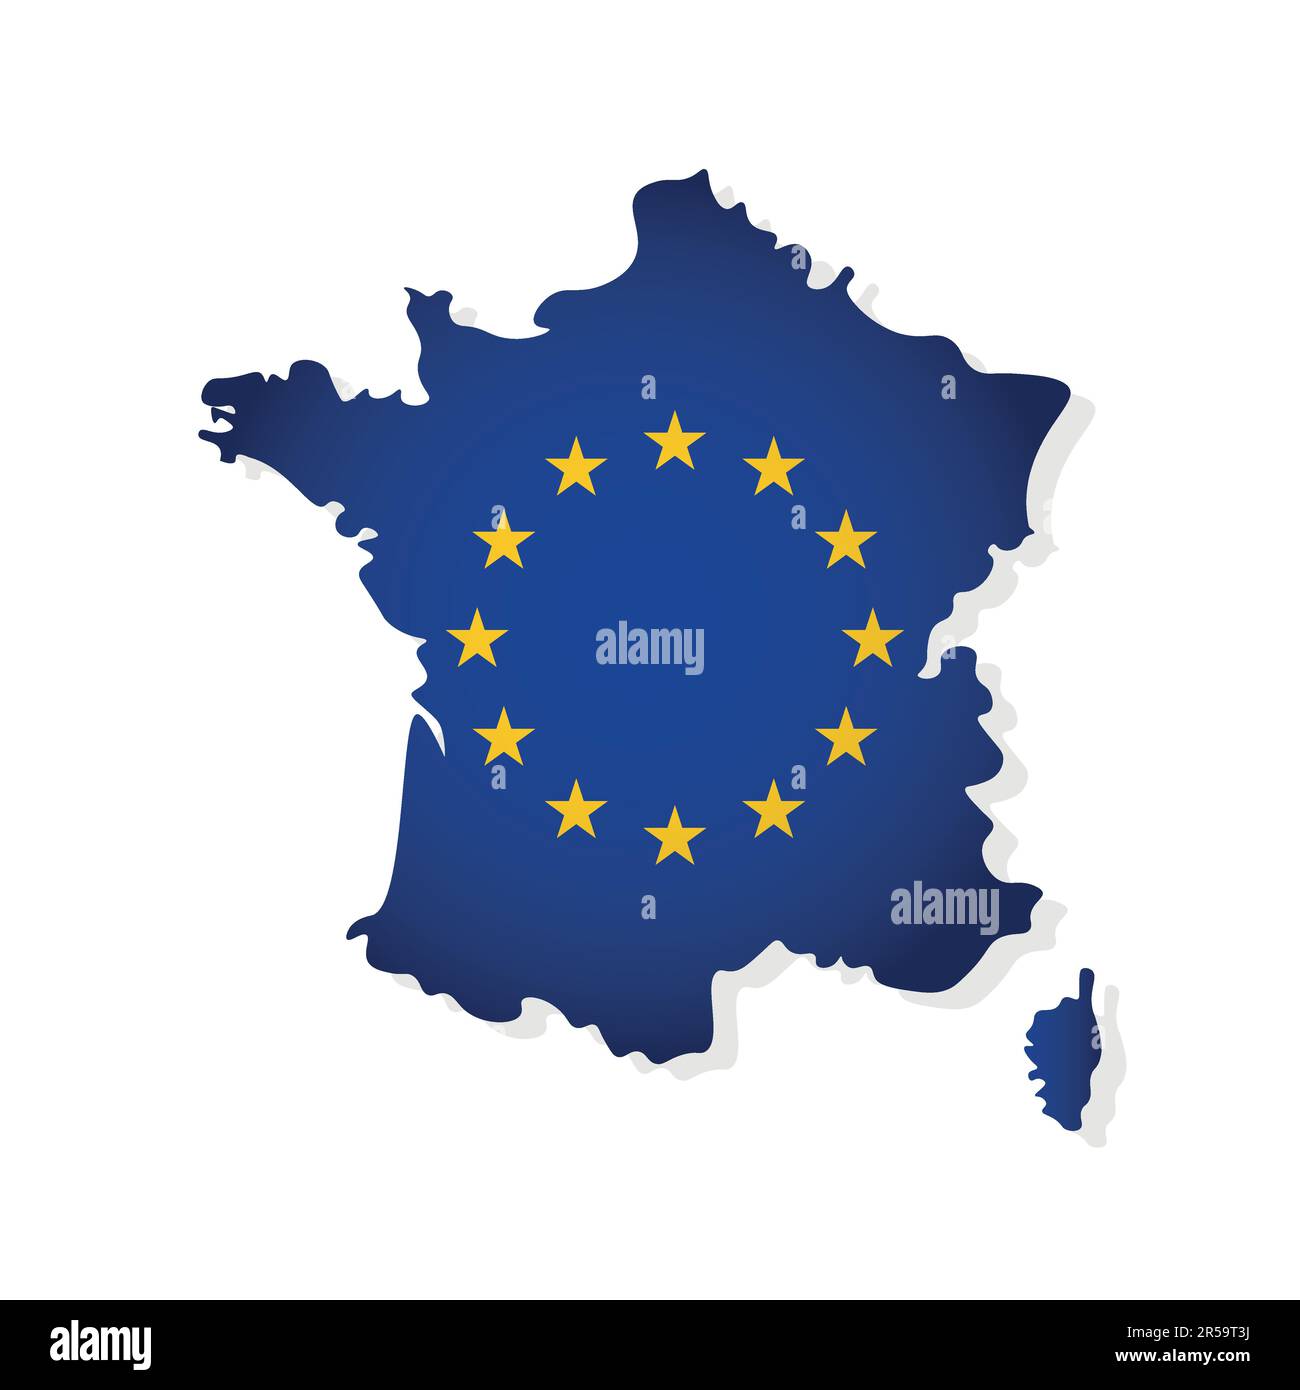 Vektordarstellung mit isolierter Karte eines Mitglieds der Europäischen Union - Frankreich. Das Konzept ist mit der EU-Flagge und gelben Sternen auf blauem Hintergrund dekoriert Stock Vektor